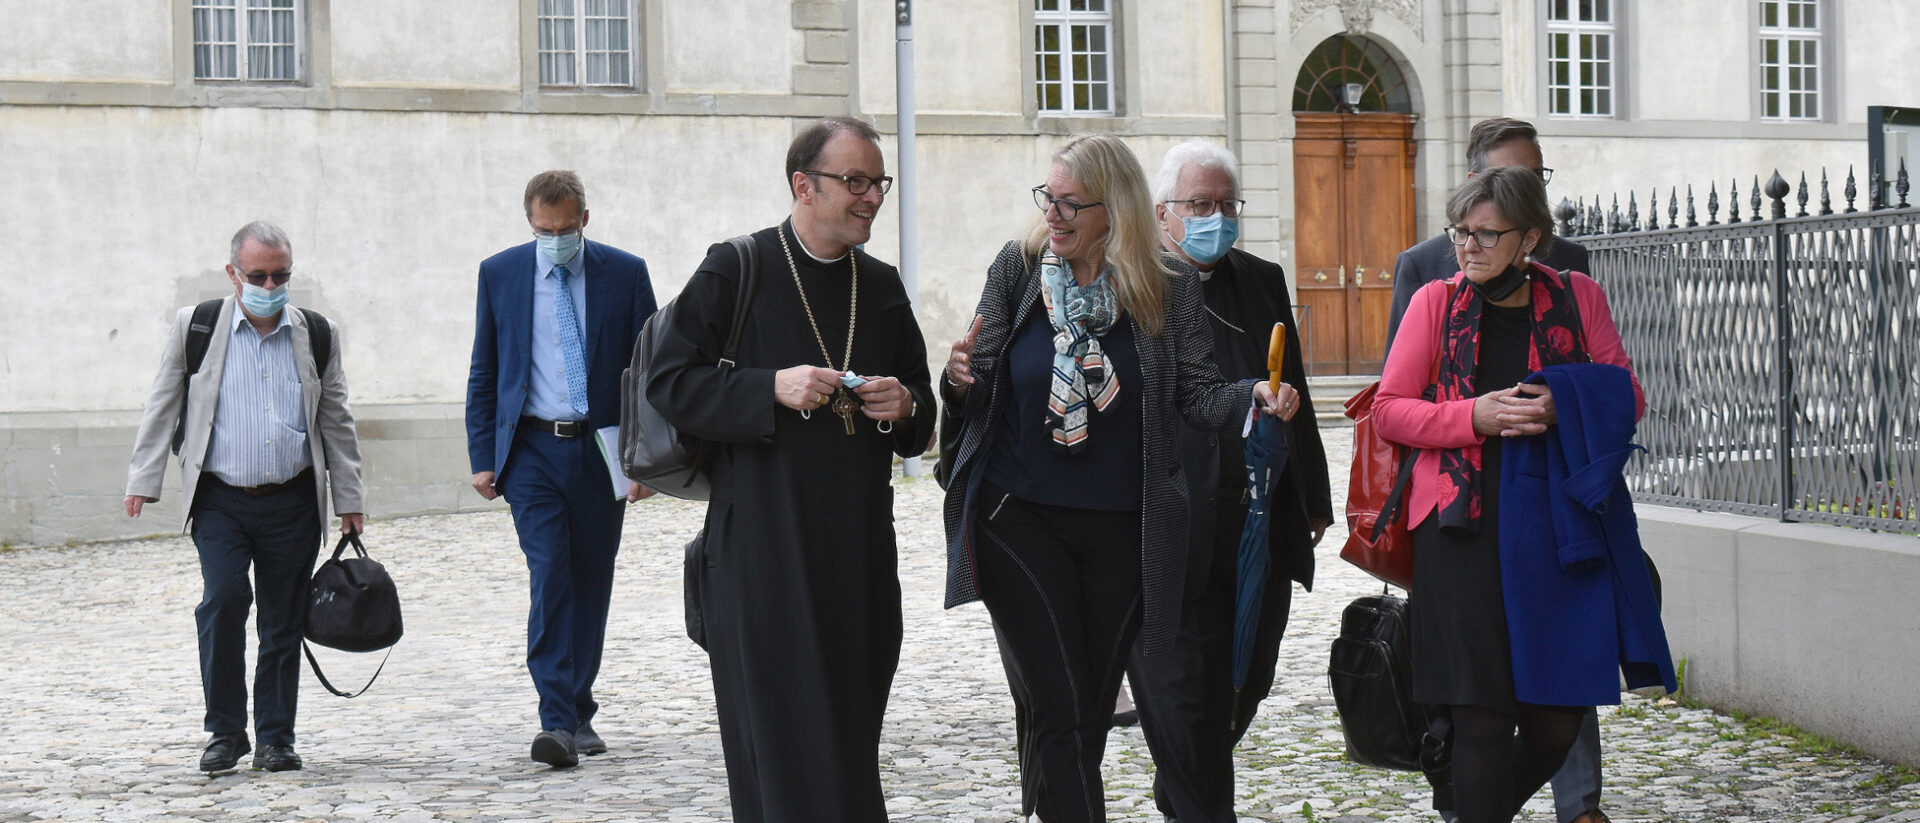 Treffen von Bischöfen und RKZ-Vertretern: Abt Urban Federer (Mitte) mit Franziska Driessen-Reding, Bischof Markus Büchel und Renata Asal-Steger. Roland Loos ist links im Bild.